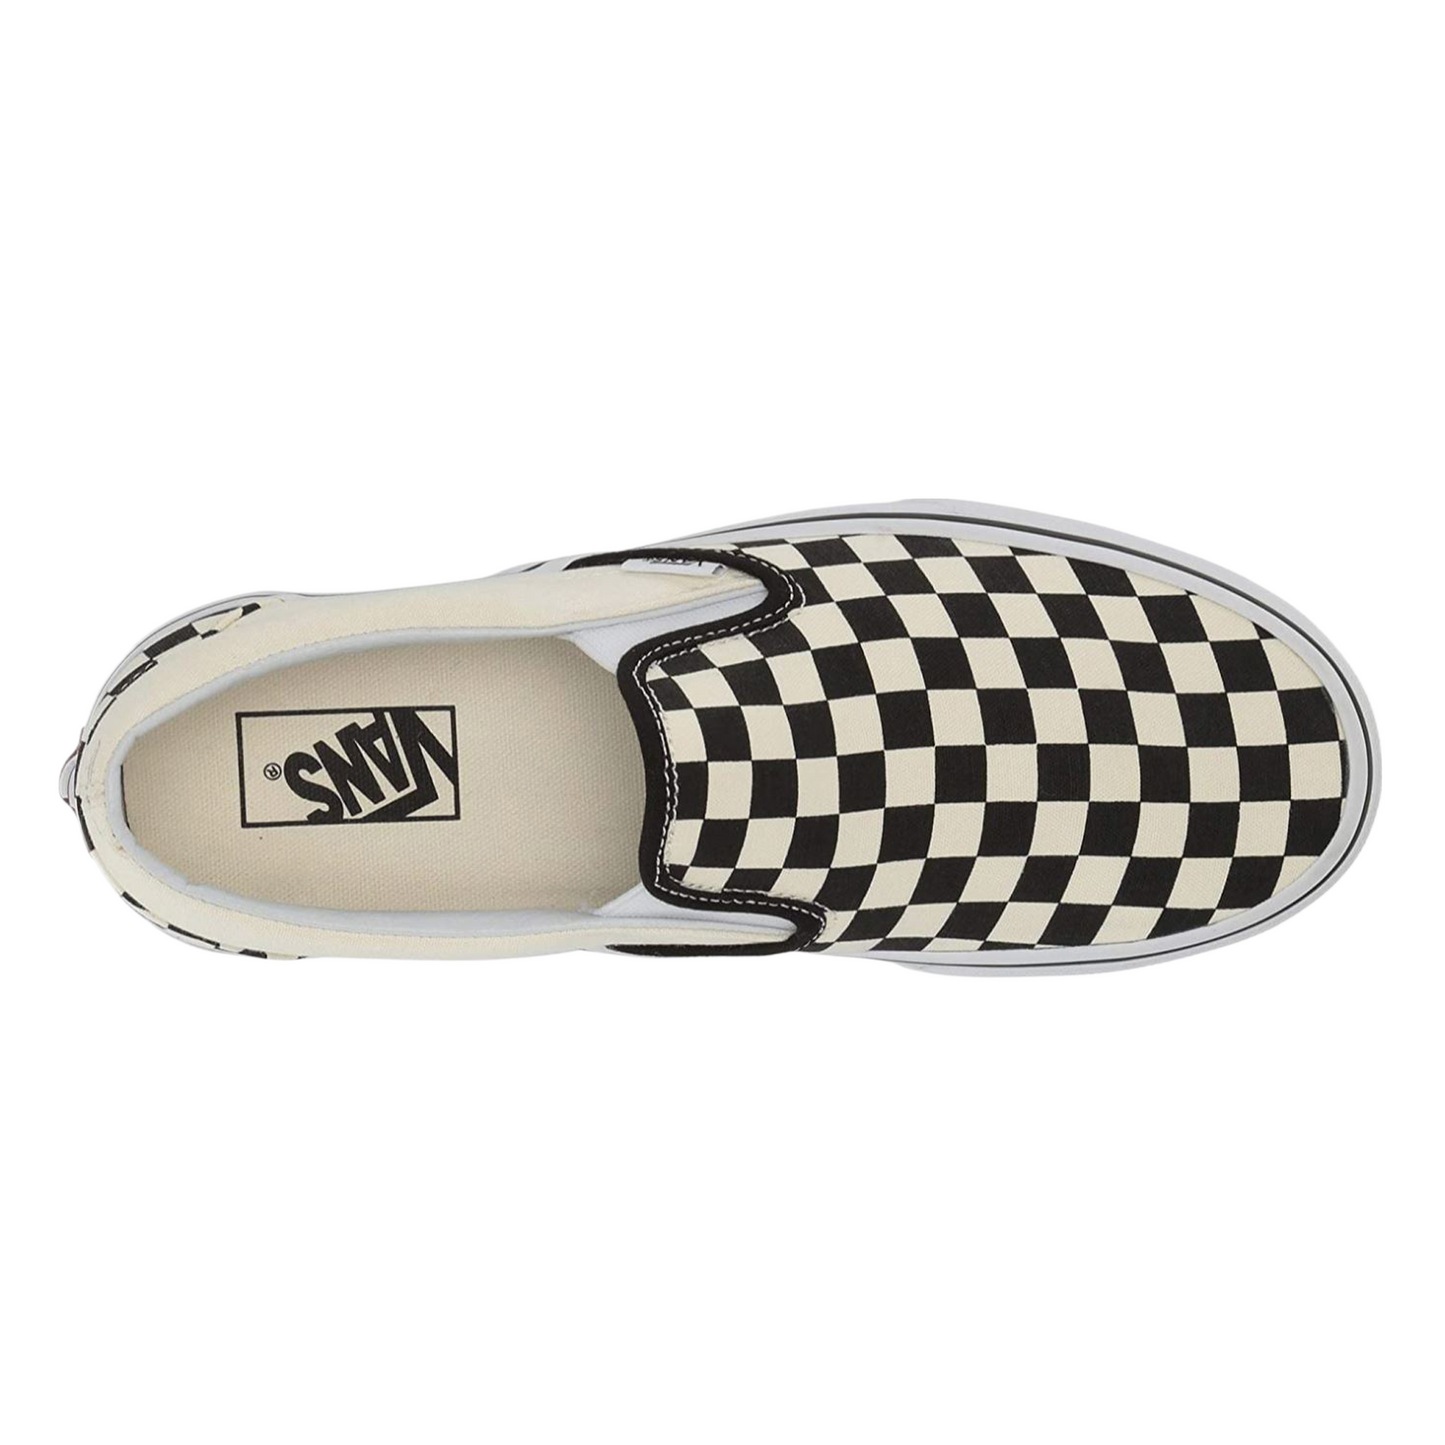 Vans Adult Unisex Checkerboard Slip-On Skate Shoes Black/Off White VN000EYEBWW